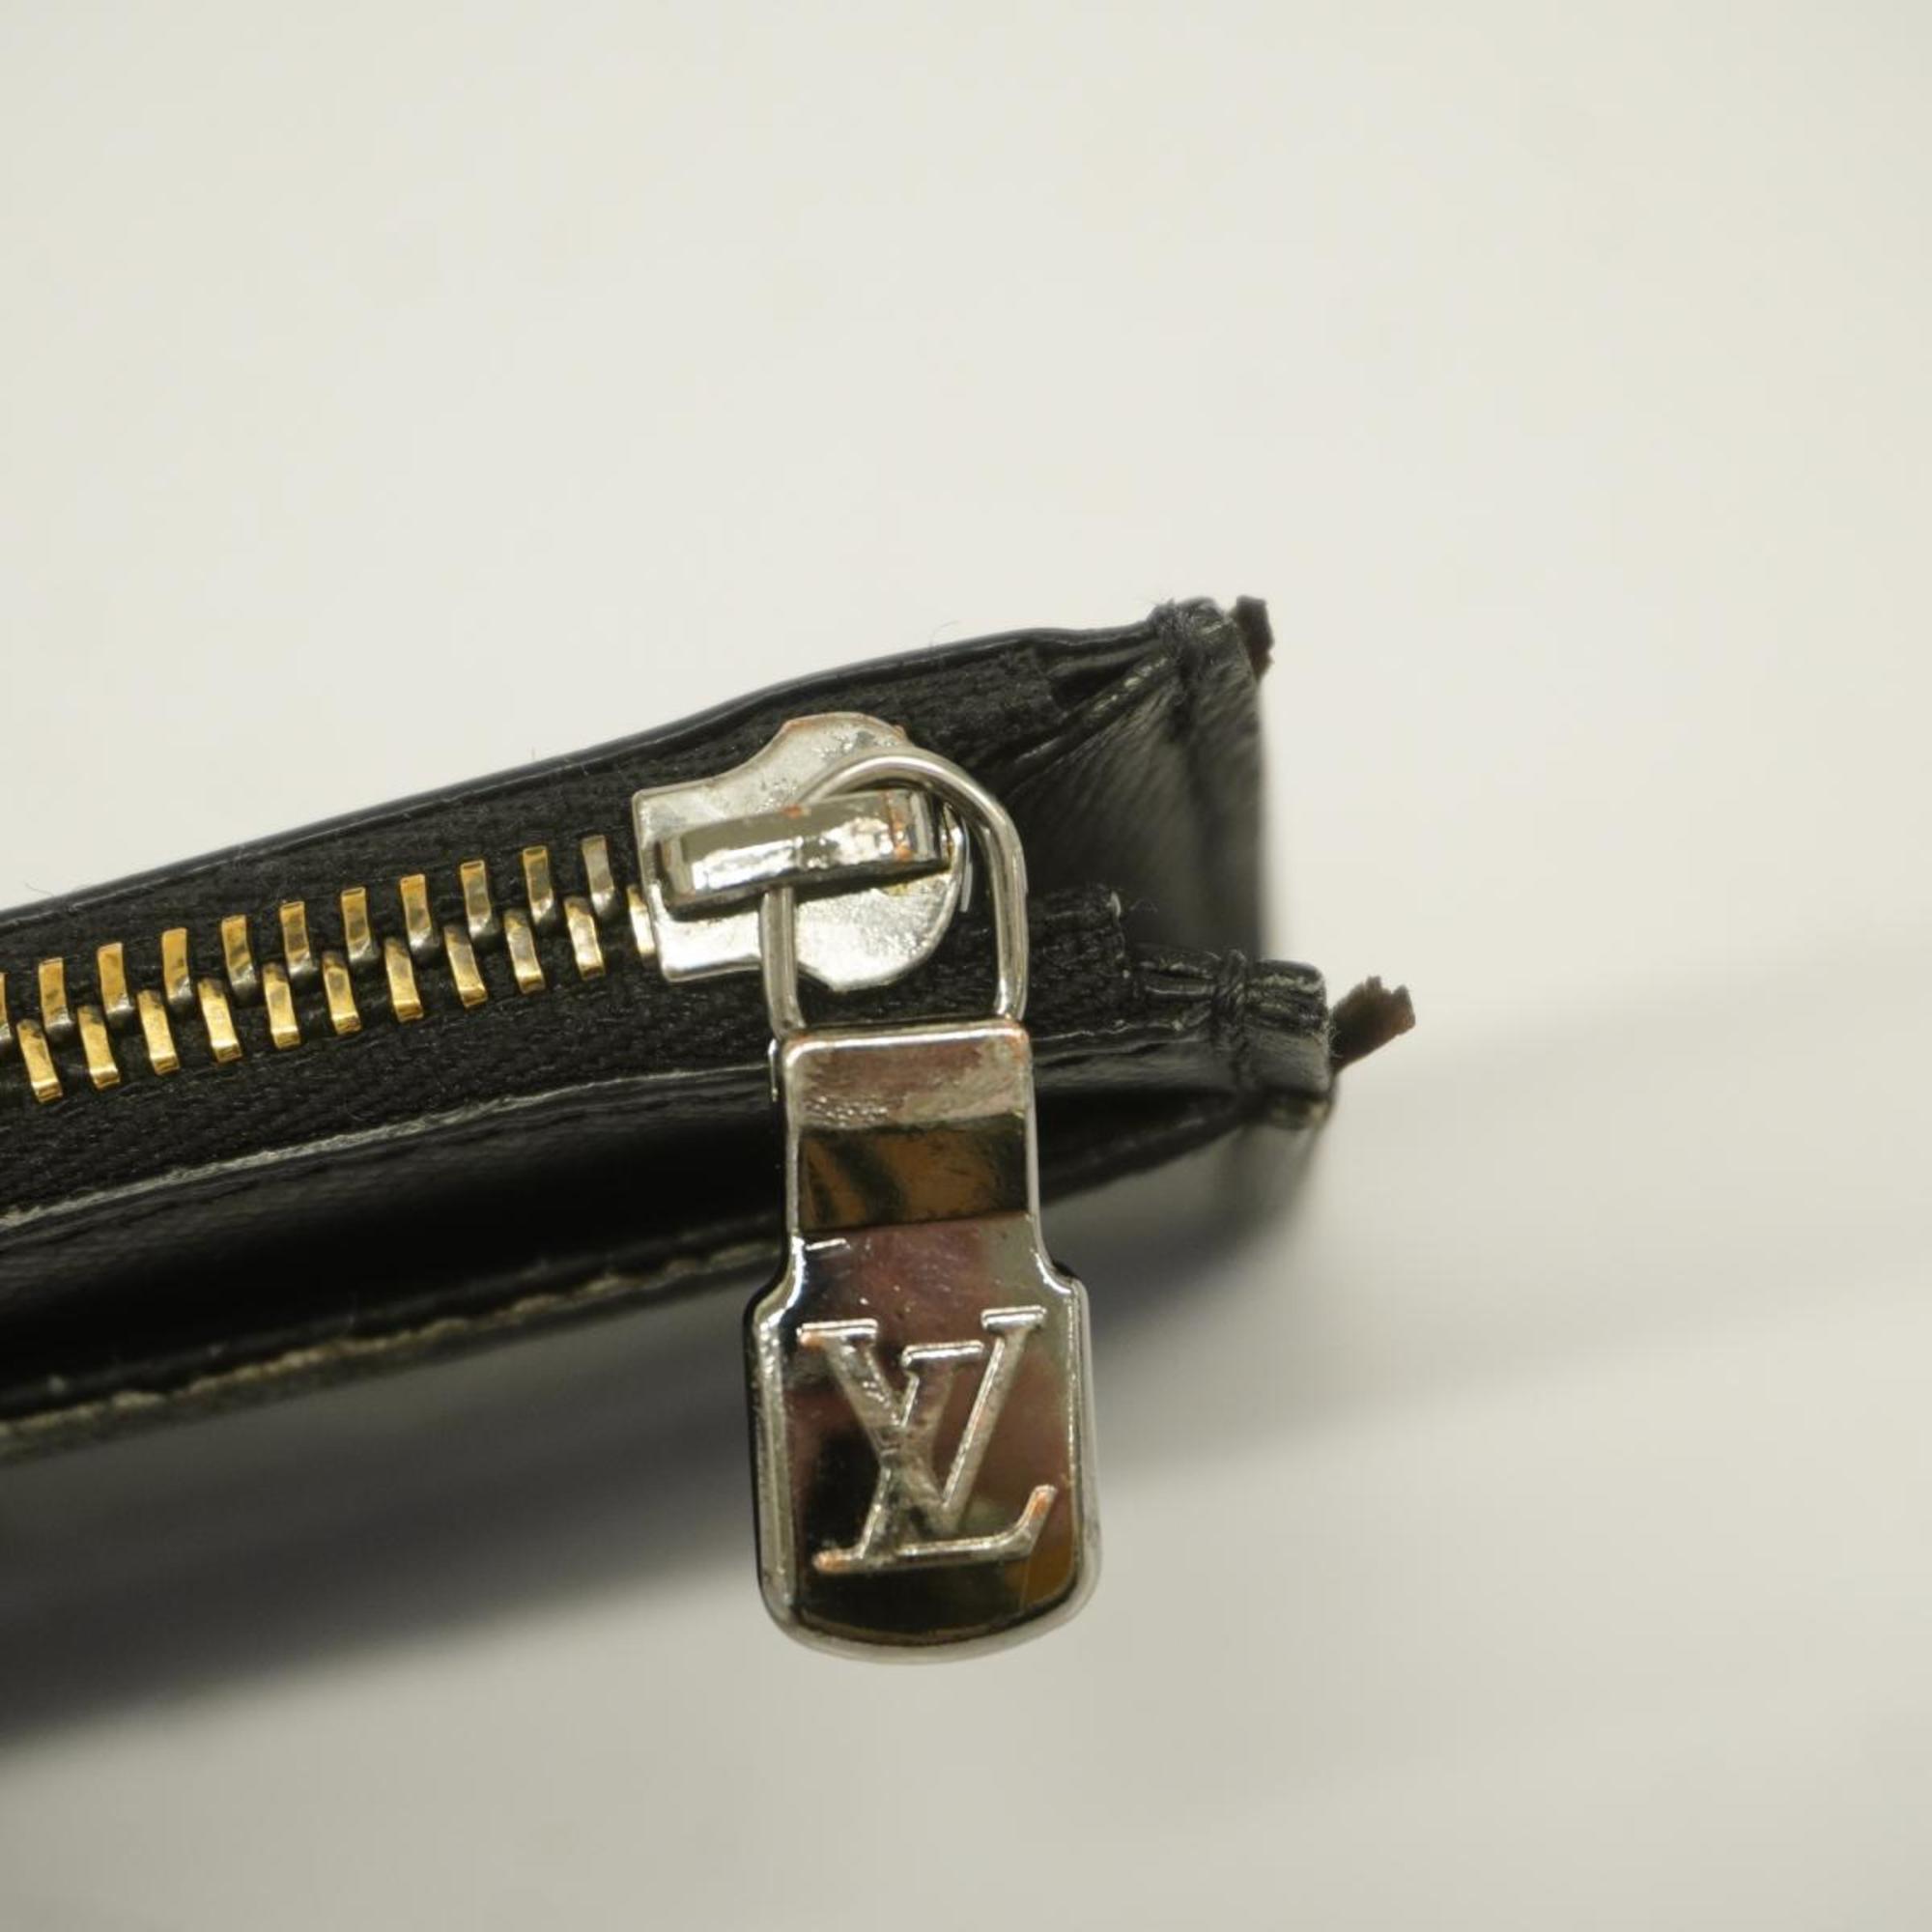 ルイ・ヴィトン(Louis Vuitton) ルイ・ヴィトン 財布・コインケース モノグラム・エクリプス コインカードホルダー M69533 ブラック グレーメンズ